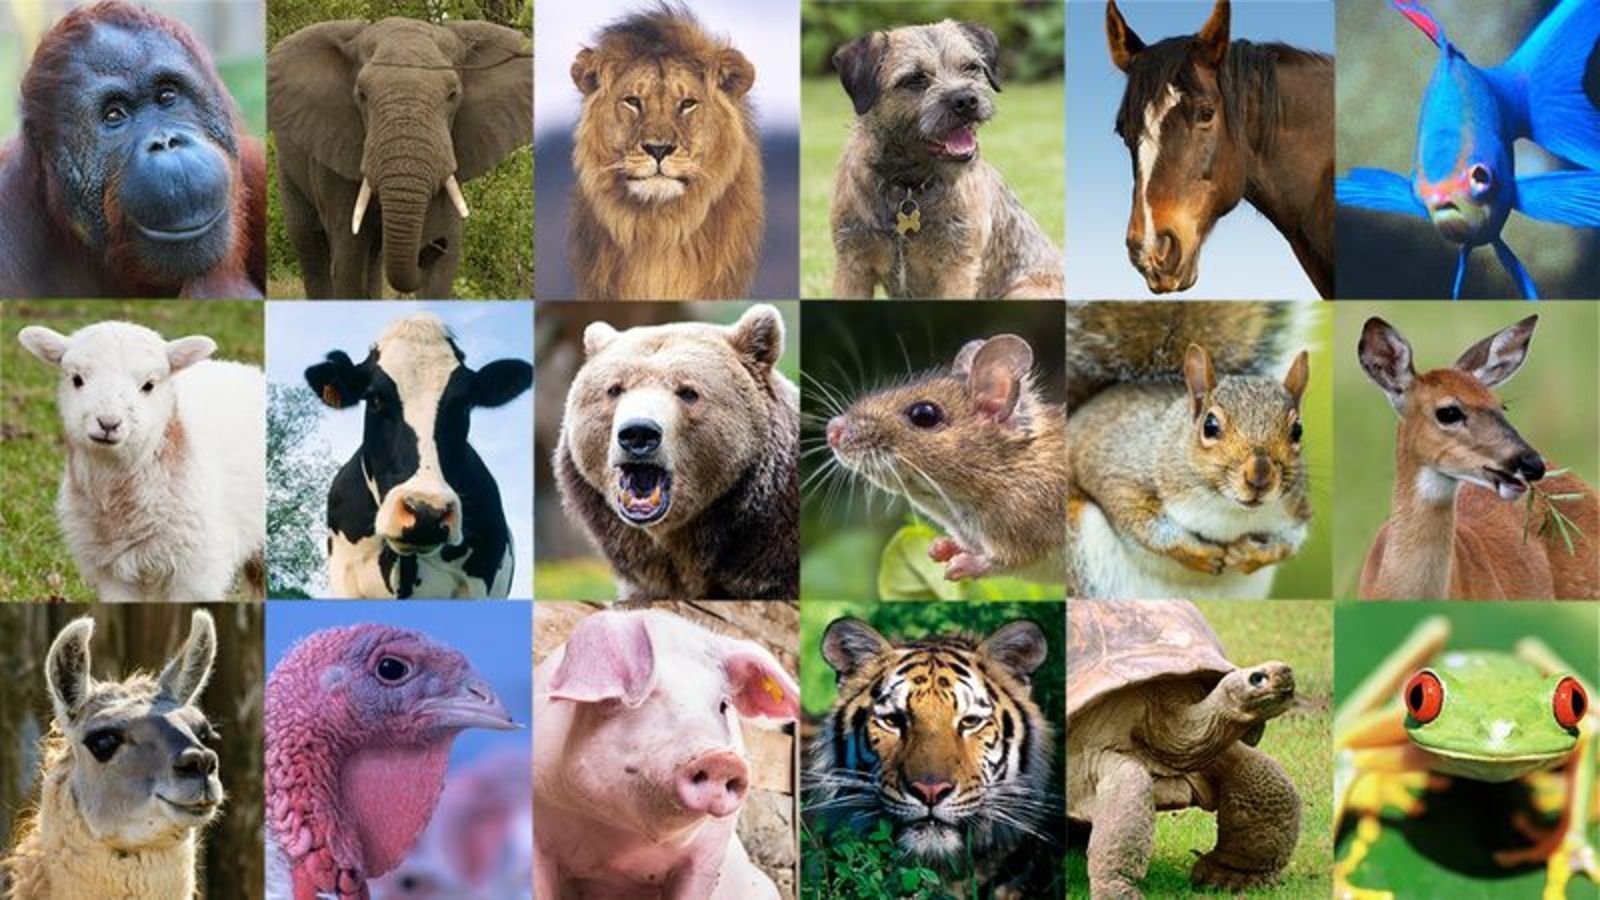 картинки про мир животных